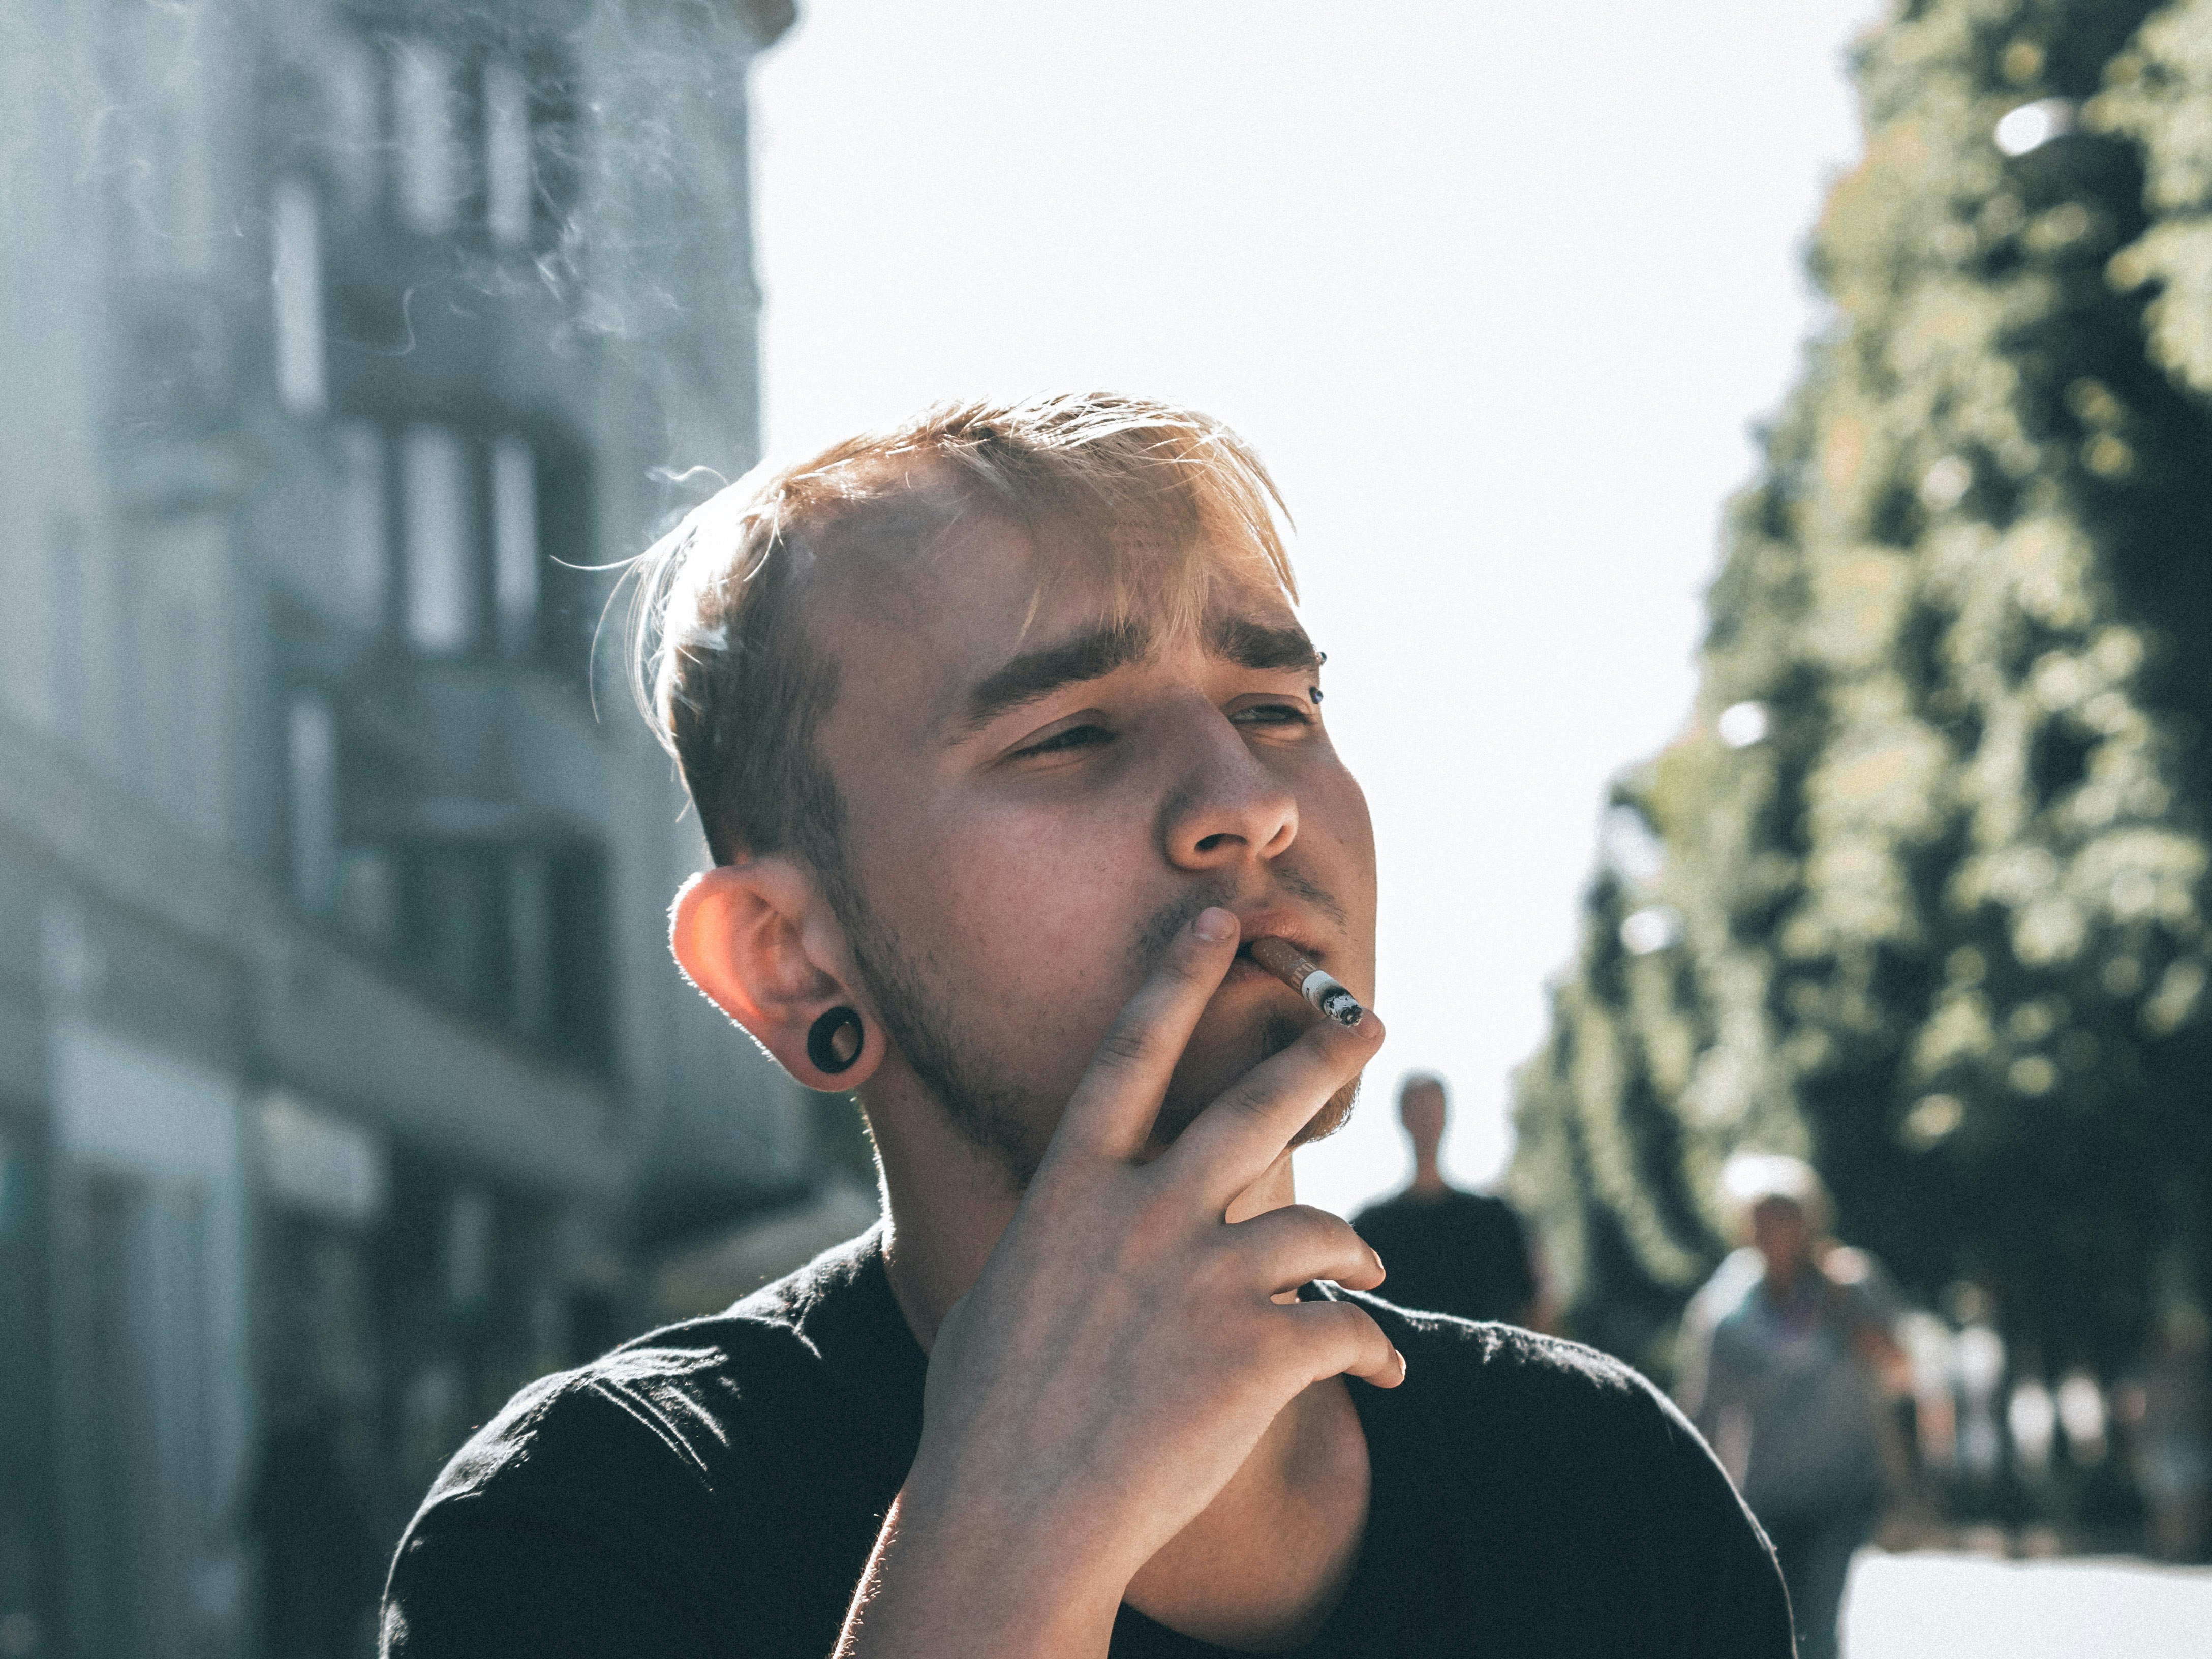 man in black crew neck shirt smoking cigarette during daytime